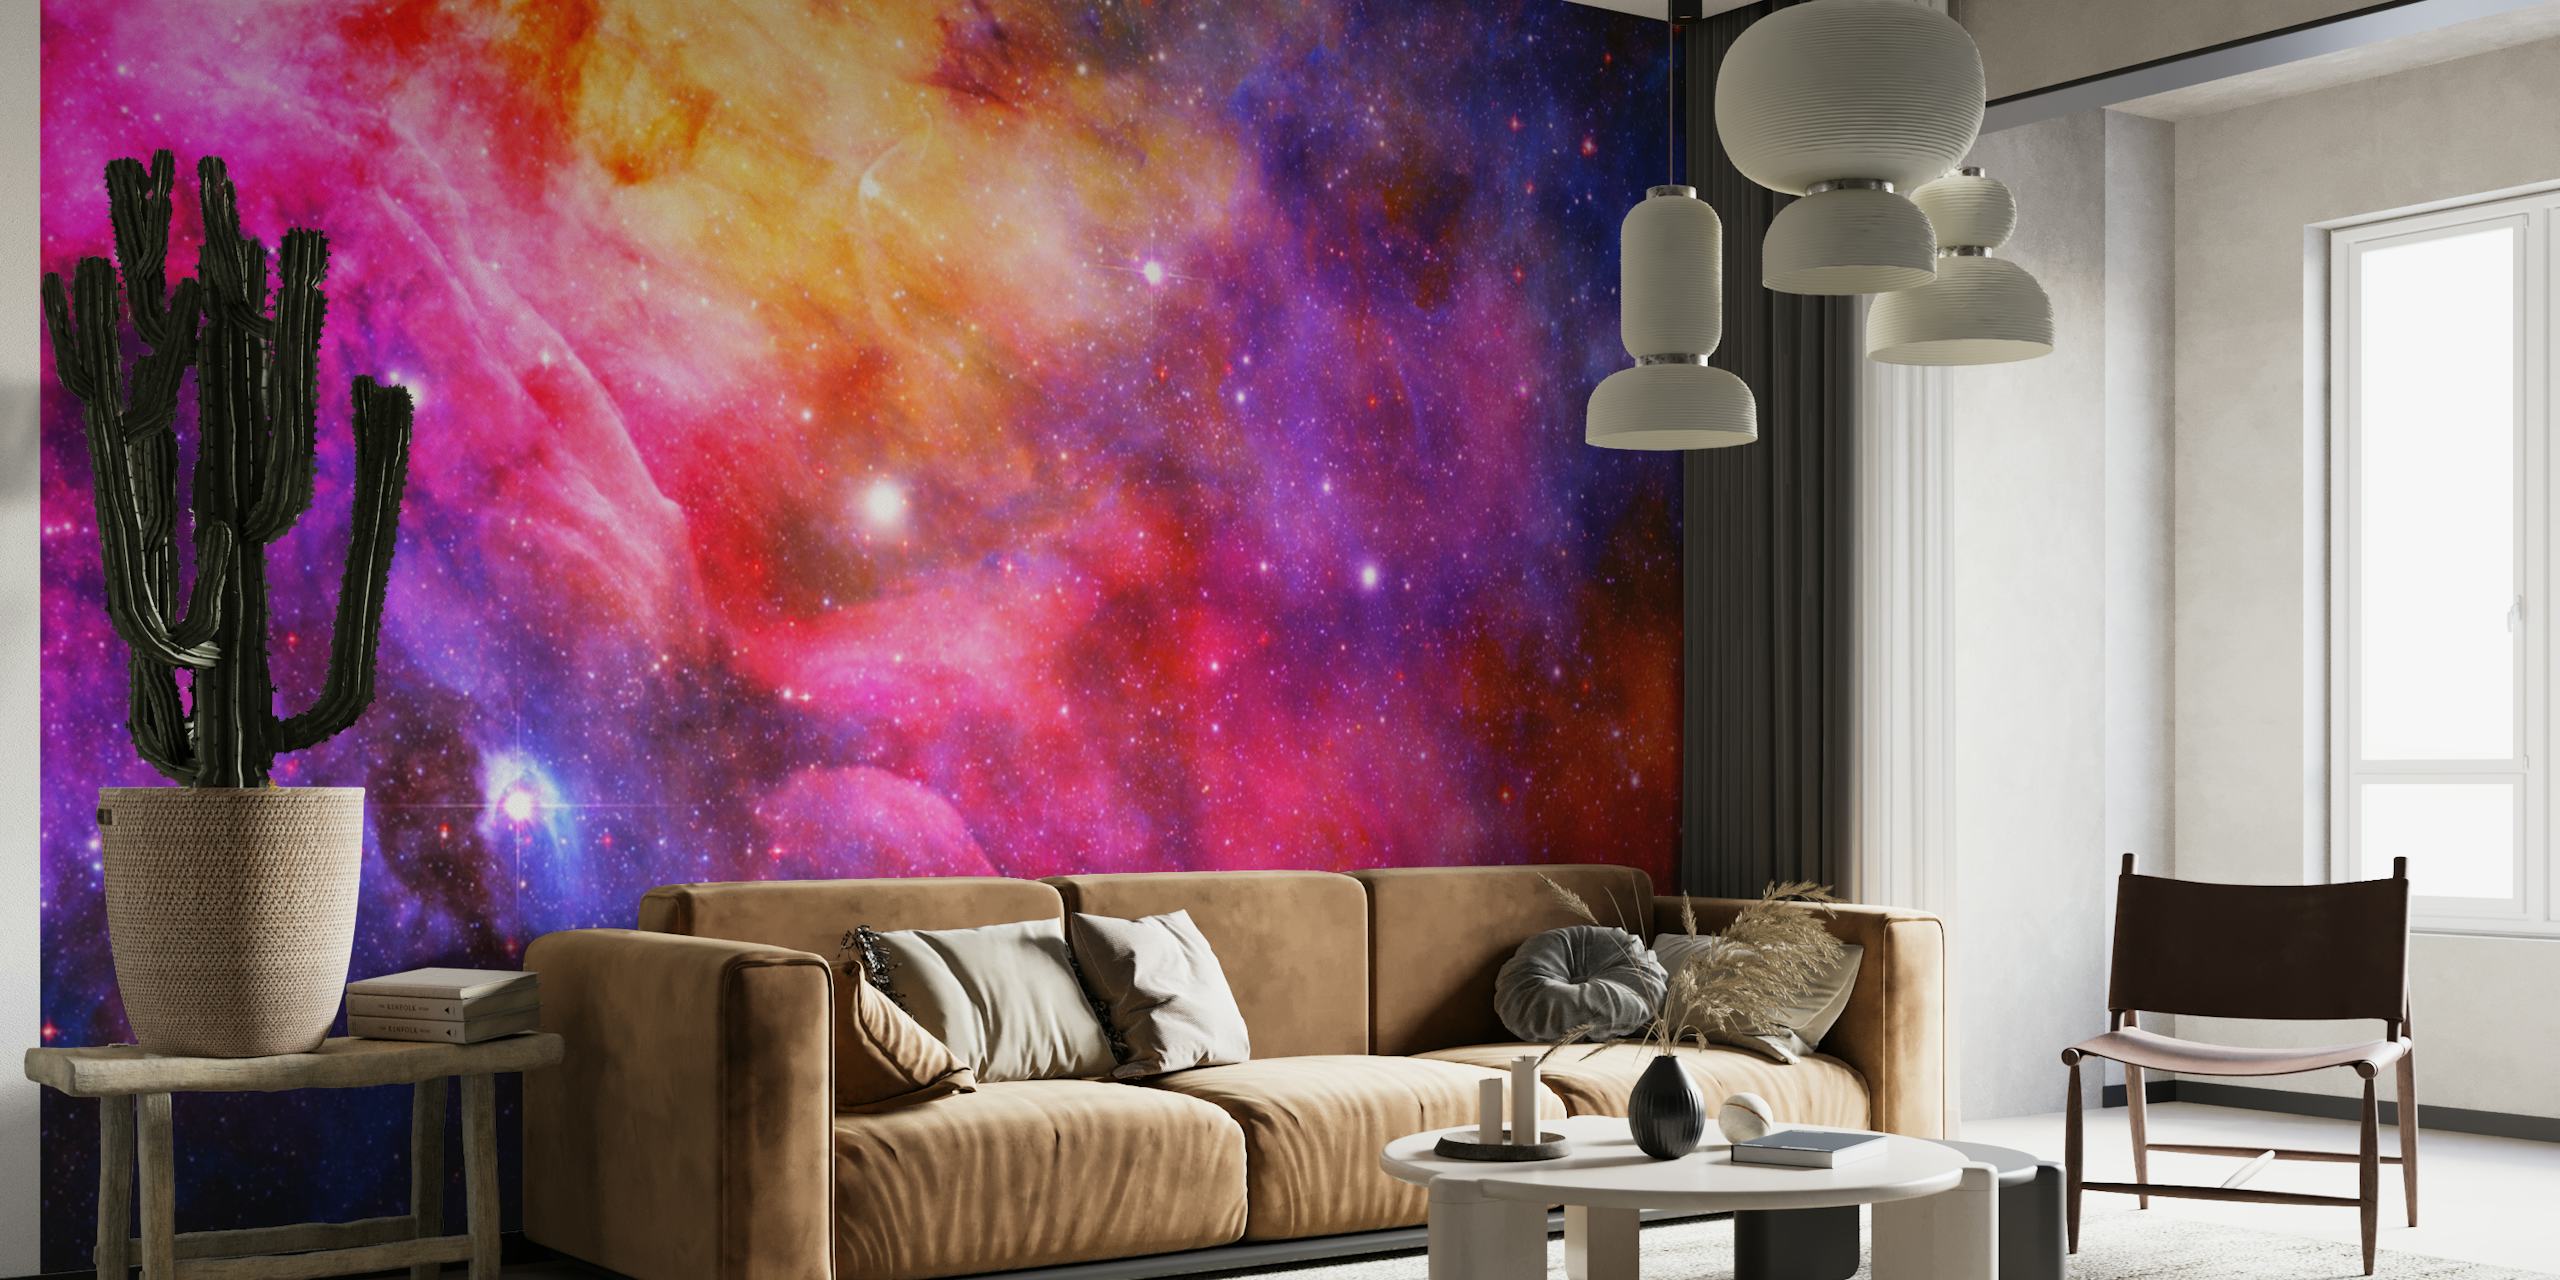 Murale colorato con galassia dello spazio esterno con stelle e motivi di nebulose